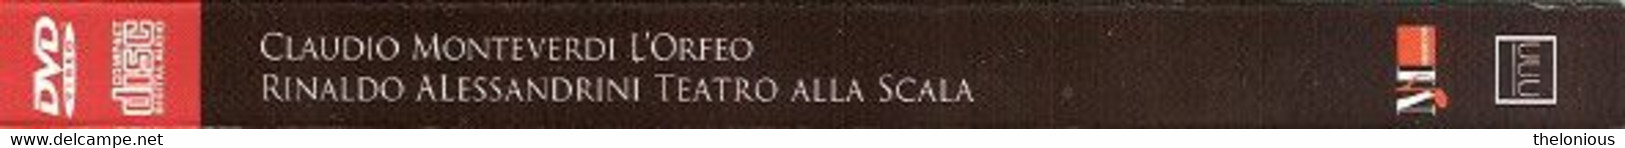 # Claudio Monteverdi - L'Orfeo - Teatro Alla Scala (DVD + CD) - Concert Et Musique